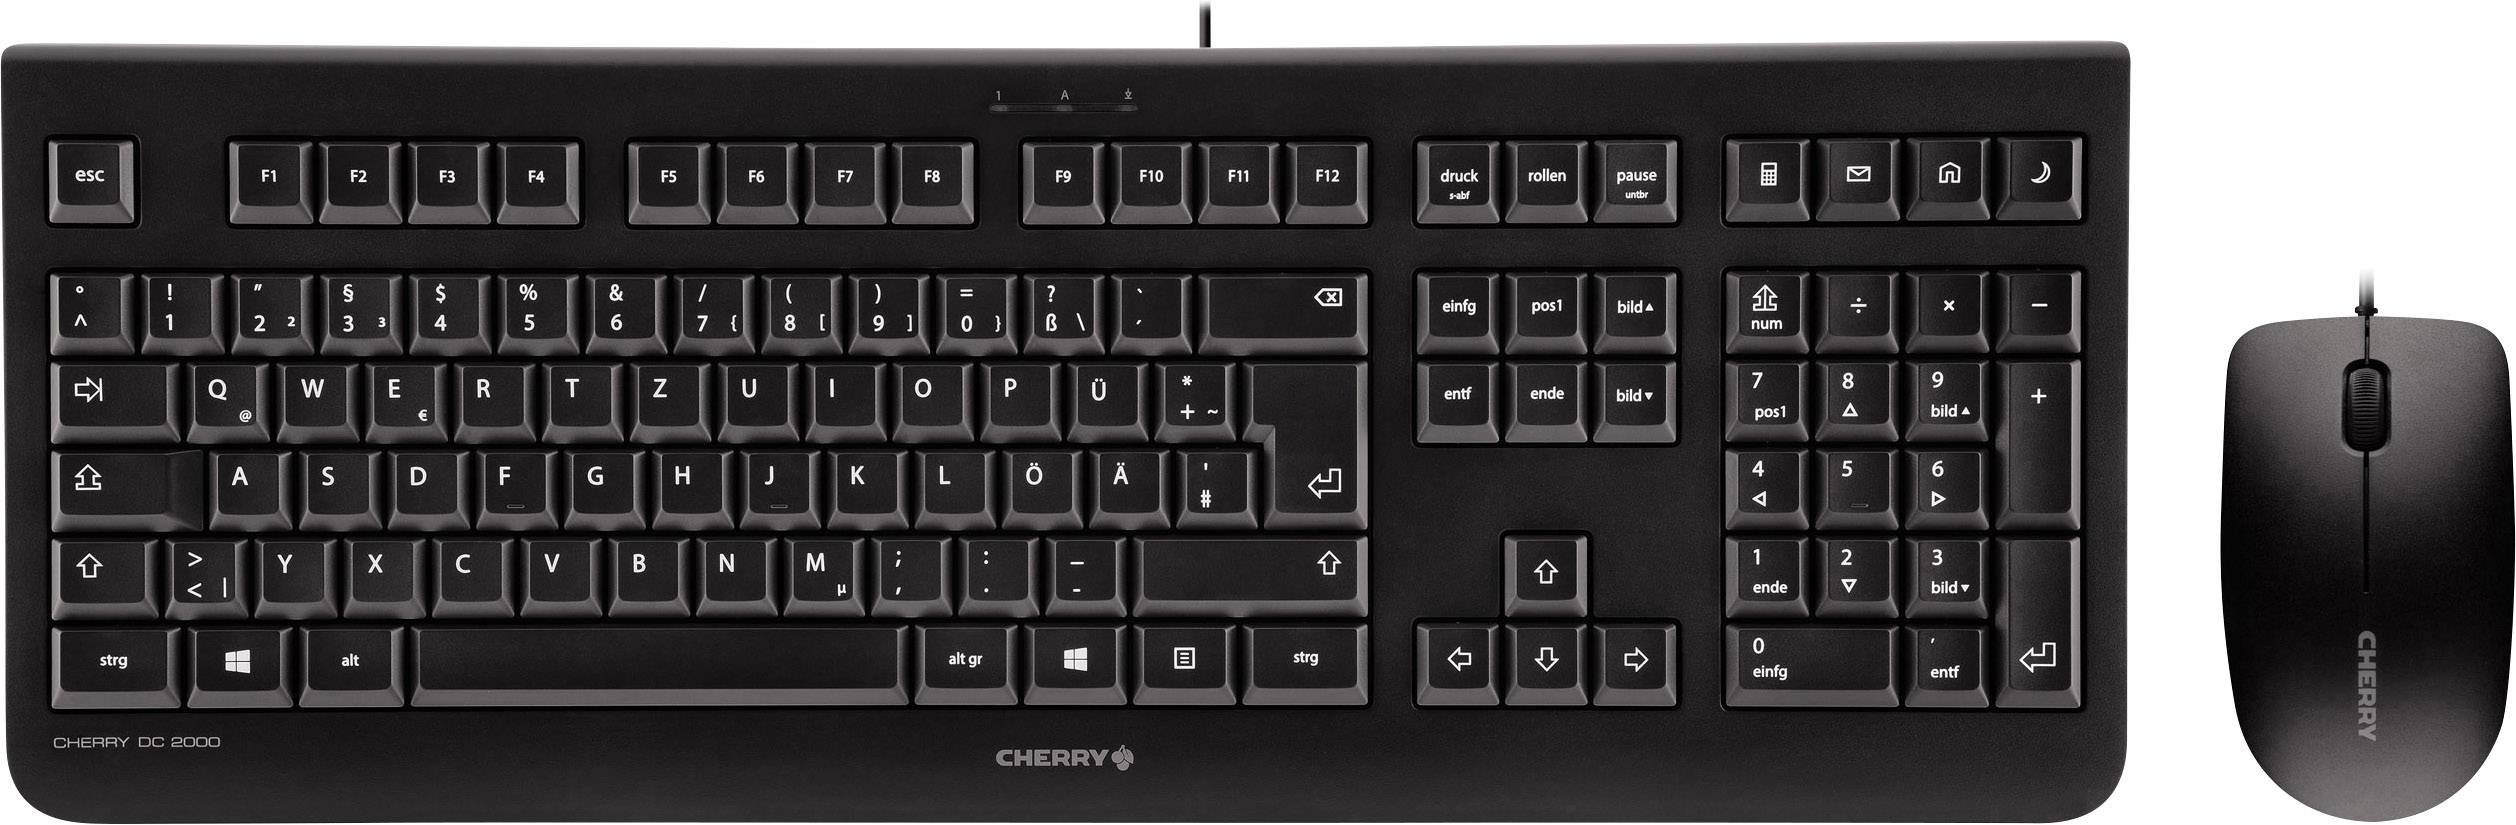 Cherry DC 2000 Corded Desktop schwarz